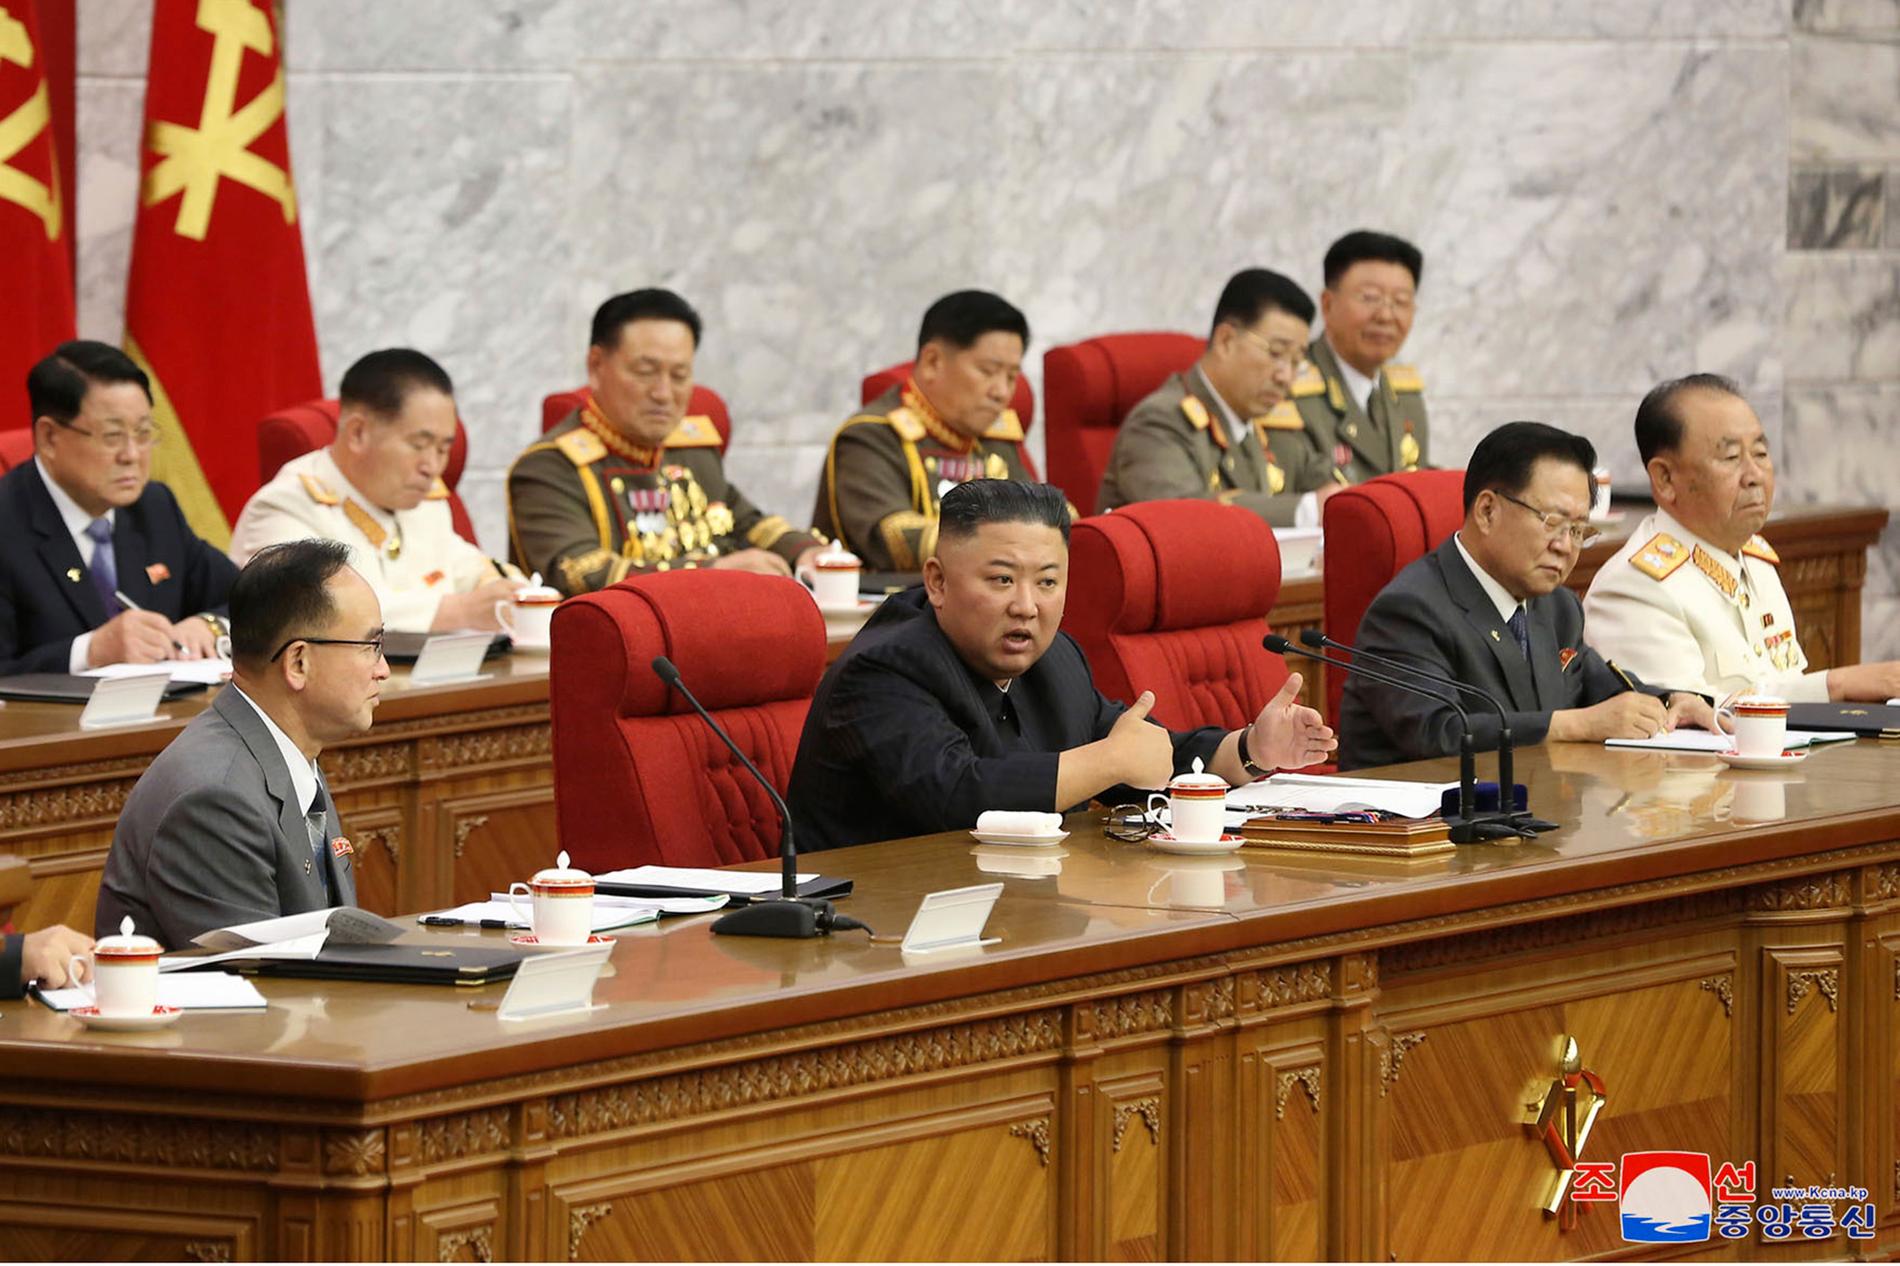 Kim Jong-Un uppmanar sina landsmän i Nordkorea att göra sig redo för både samtal och konfrontation med USA.